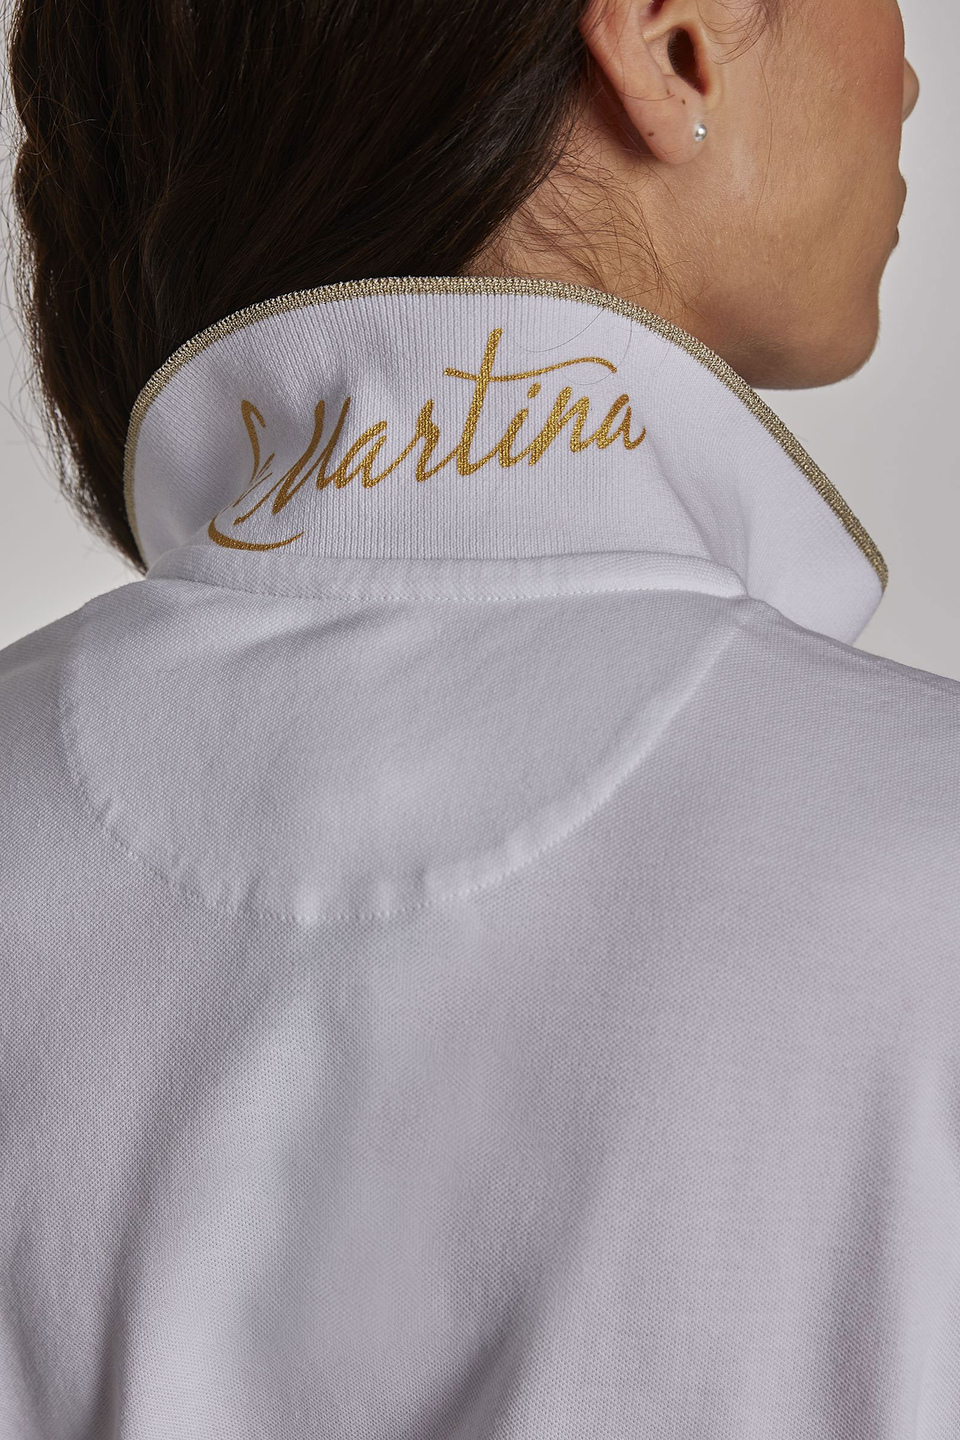 Robe femme en coton à manches courtes et coupe classique - La Martina - Official Online Shop